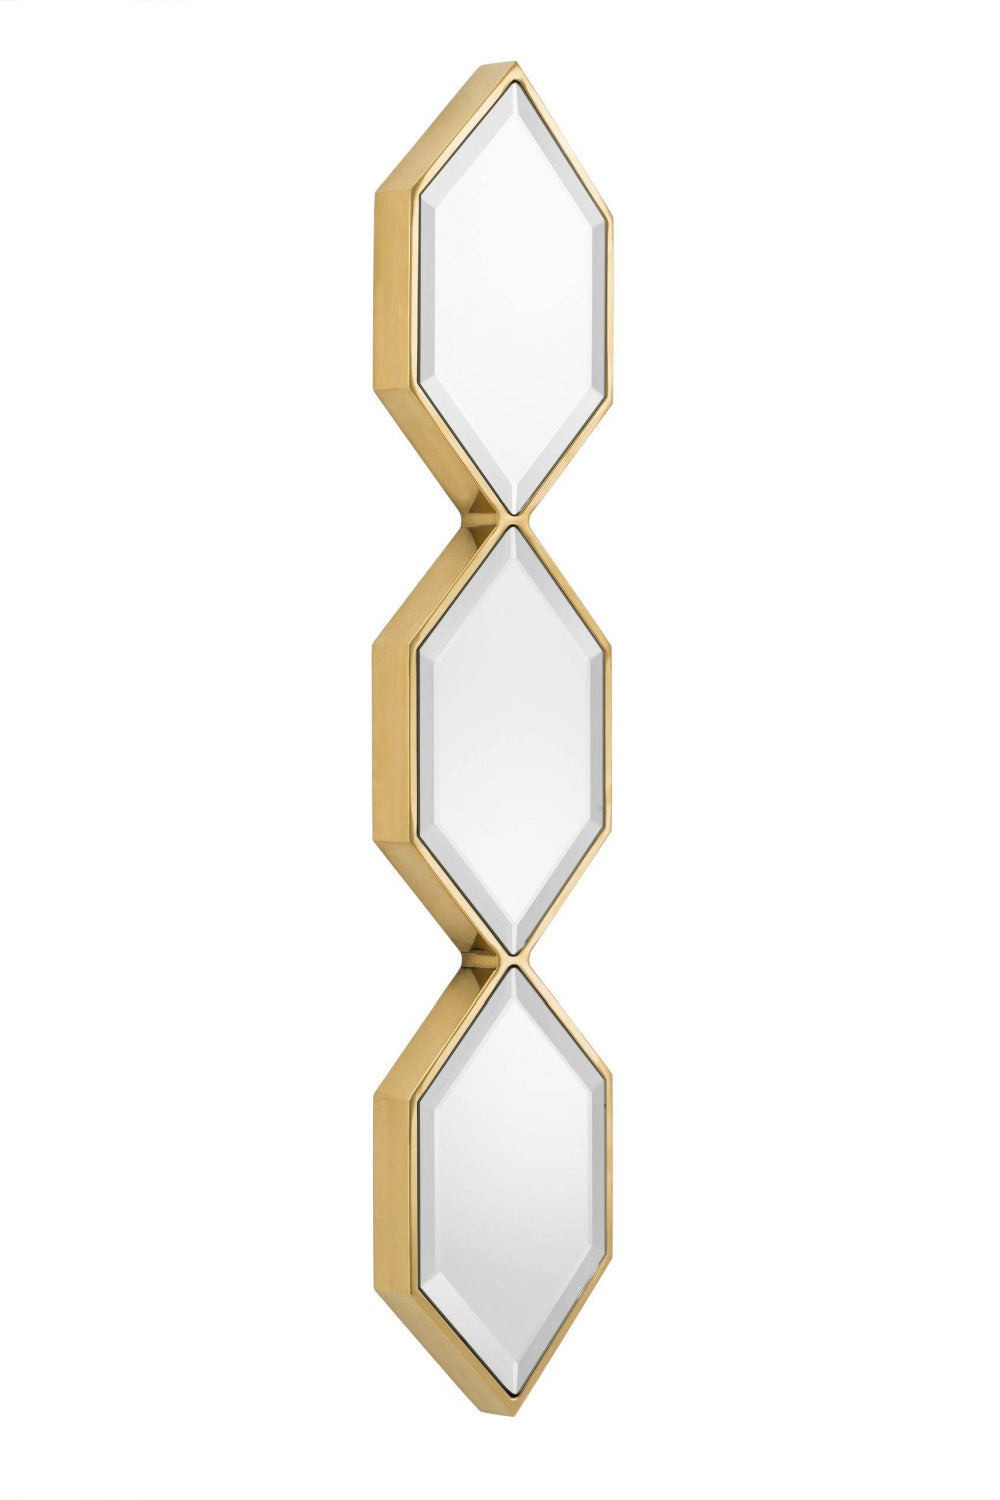 Gold Hexagonal Beveled Trio Mirror Glass | Eichholtz Saronno | OROA